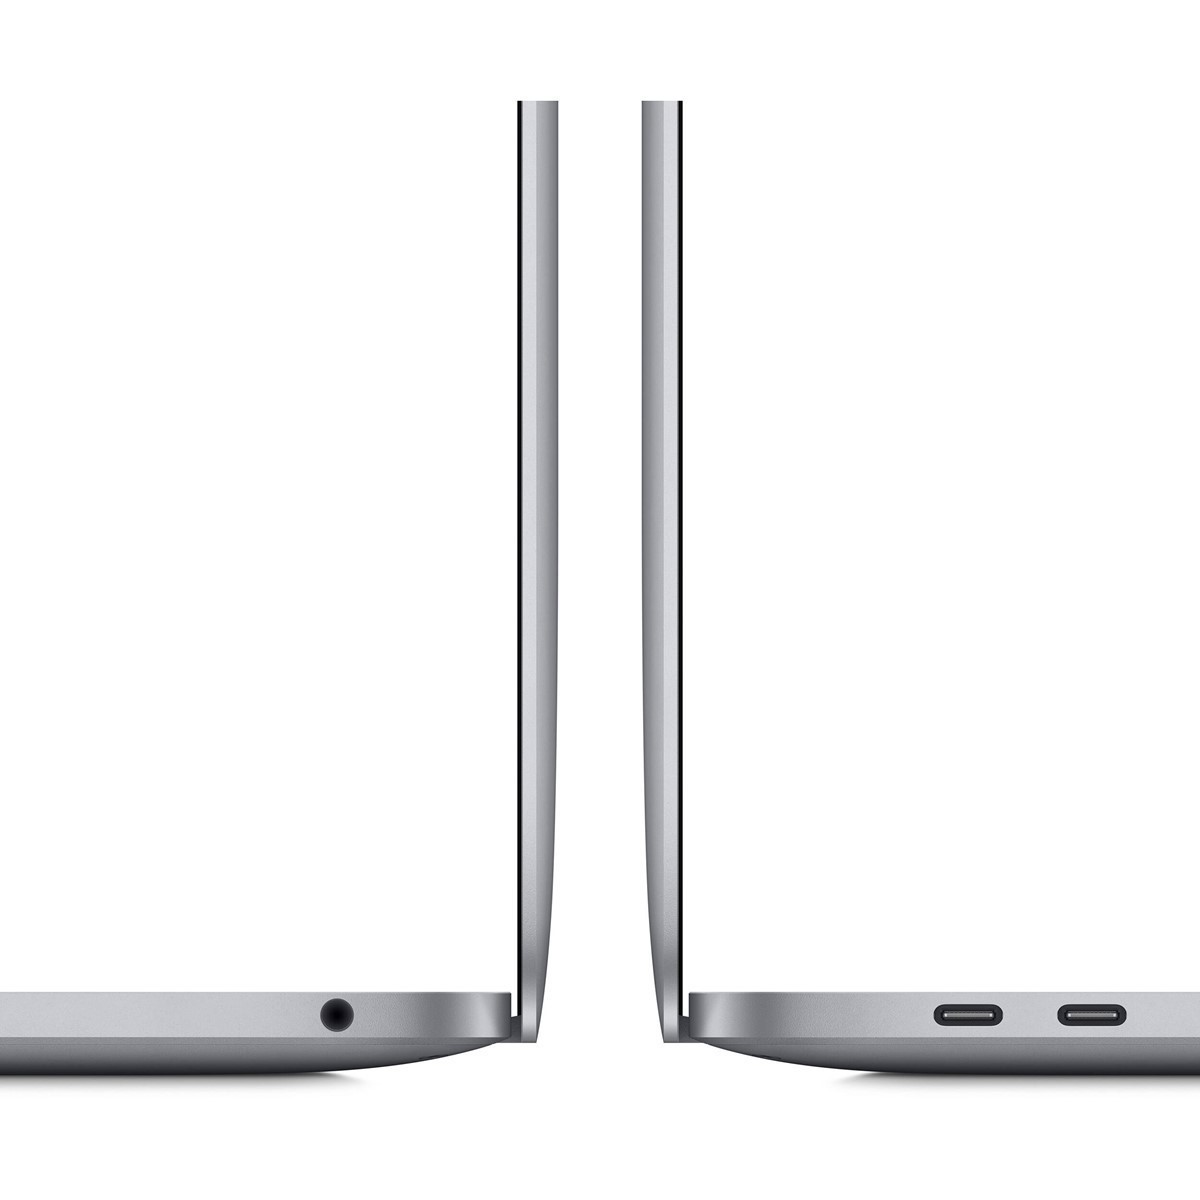 لپ تاپ 13 اینچی اپل مدل MacBook Pro CTO M1-16-256 2020 همراه با تاچ بار